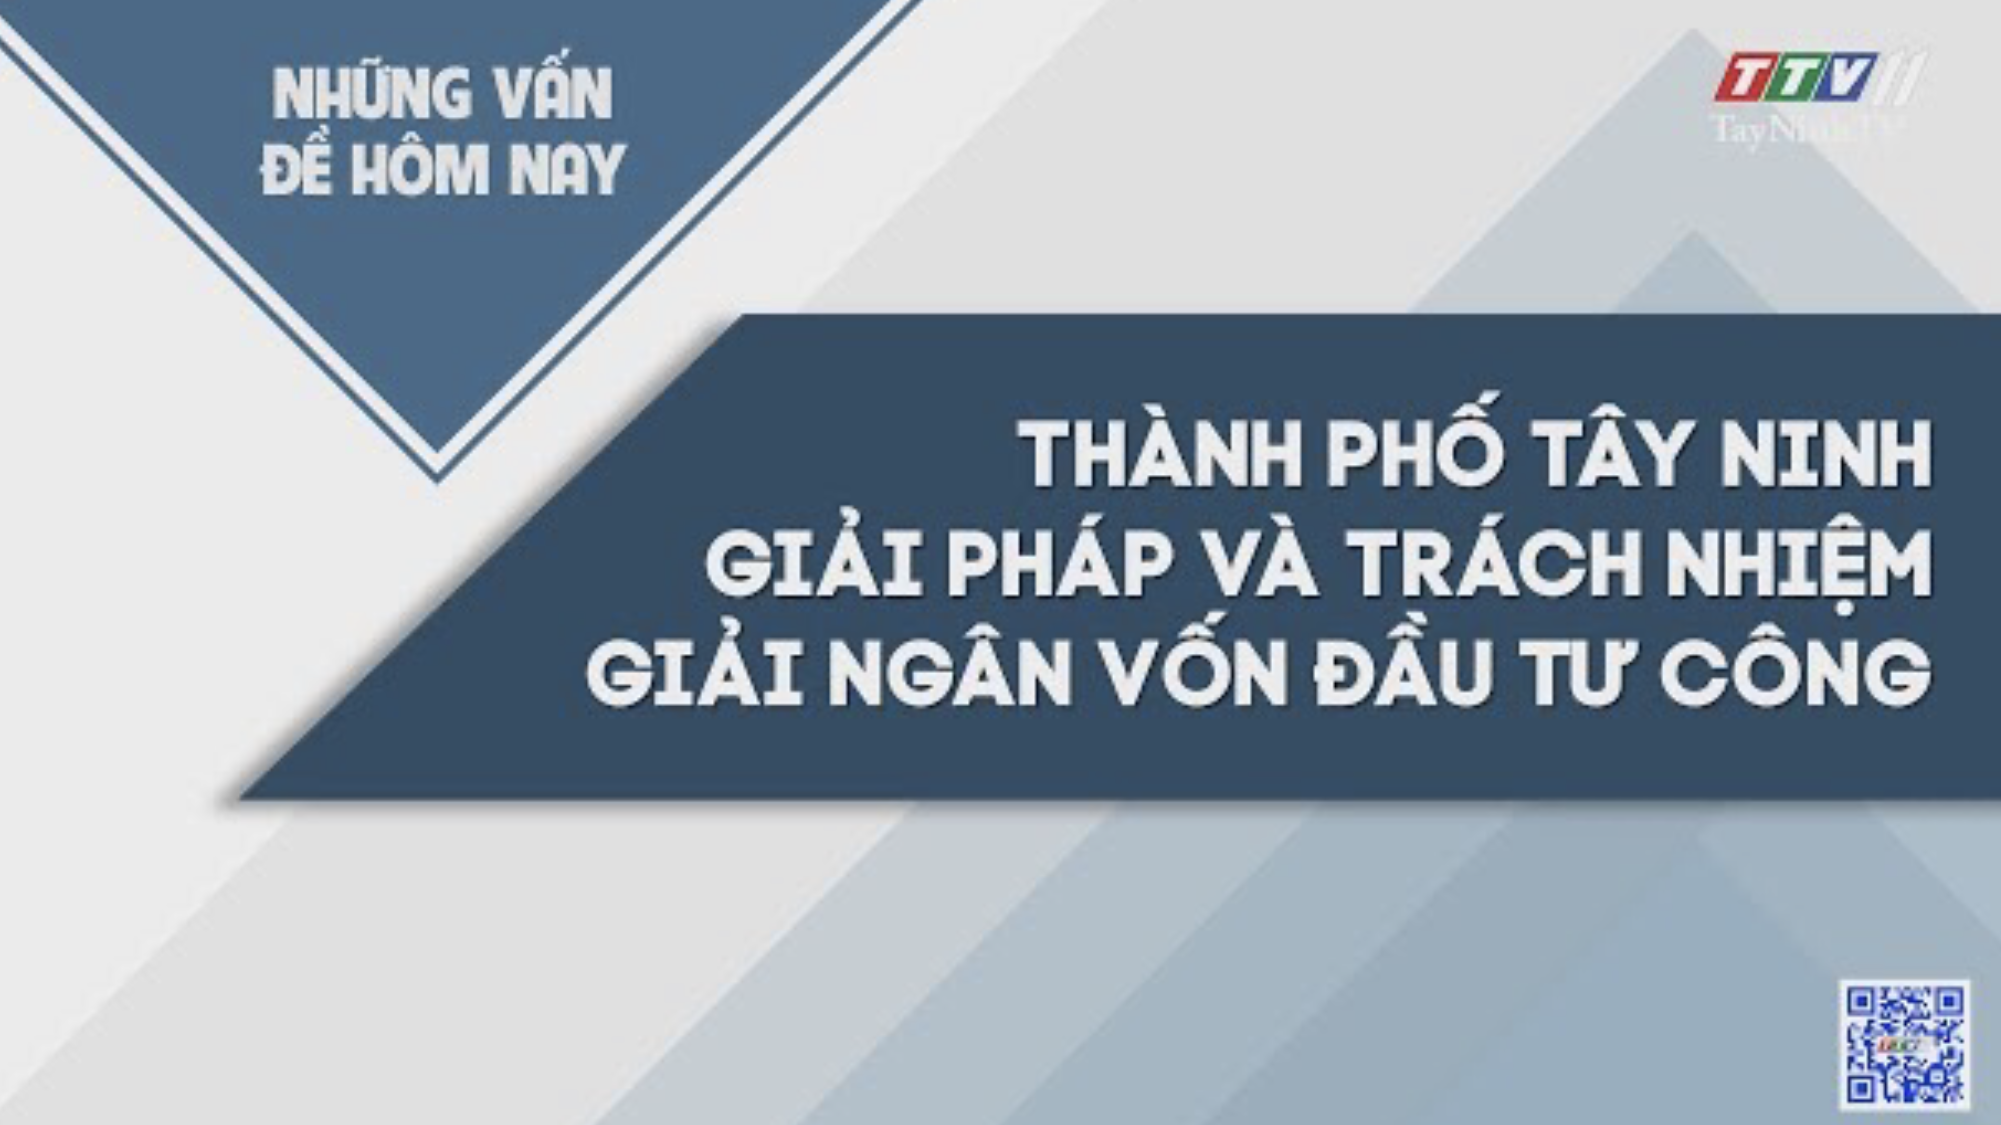 Thành phố Tây Ninh gải pháp và trách nhiệm giải ngân vốn đầu tư công | NHỮNG VẤN ĐỀ HÔM NAY | TayNinhTV